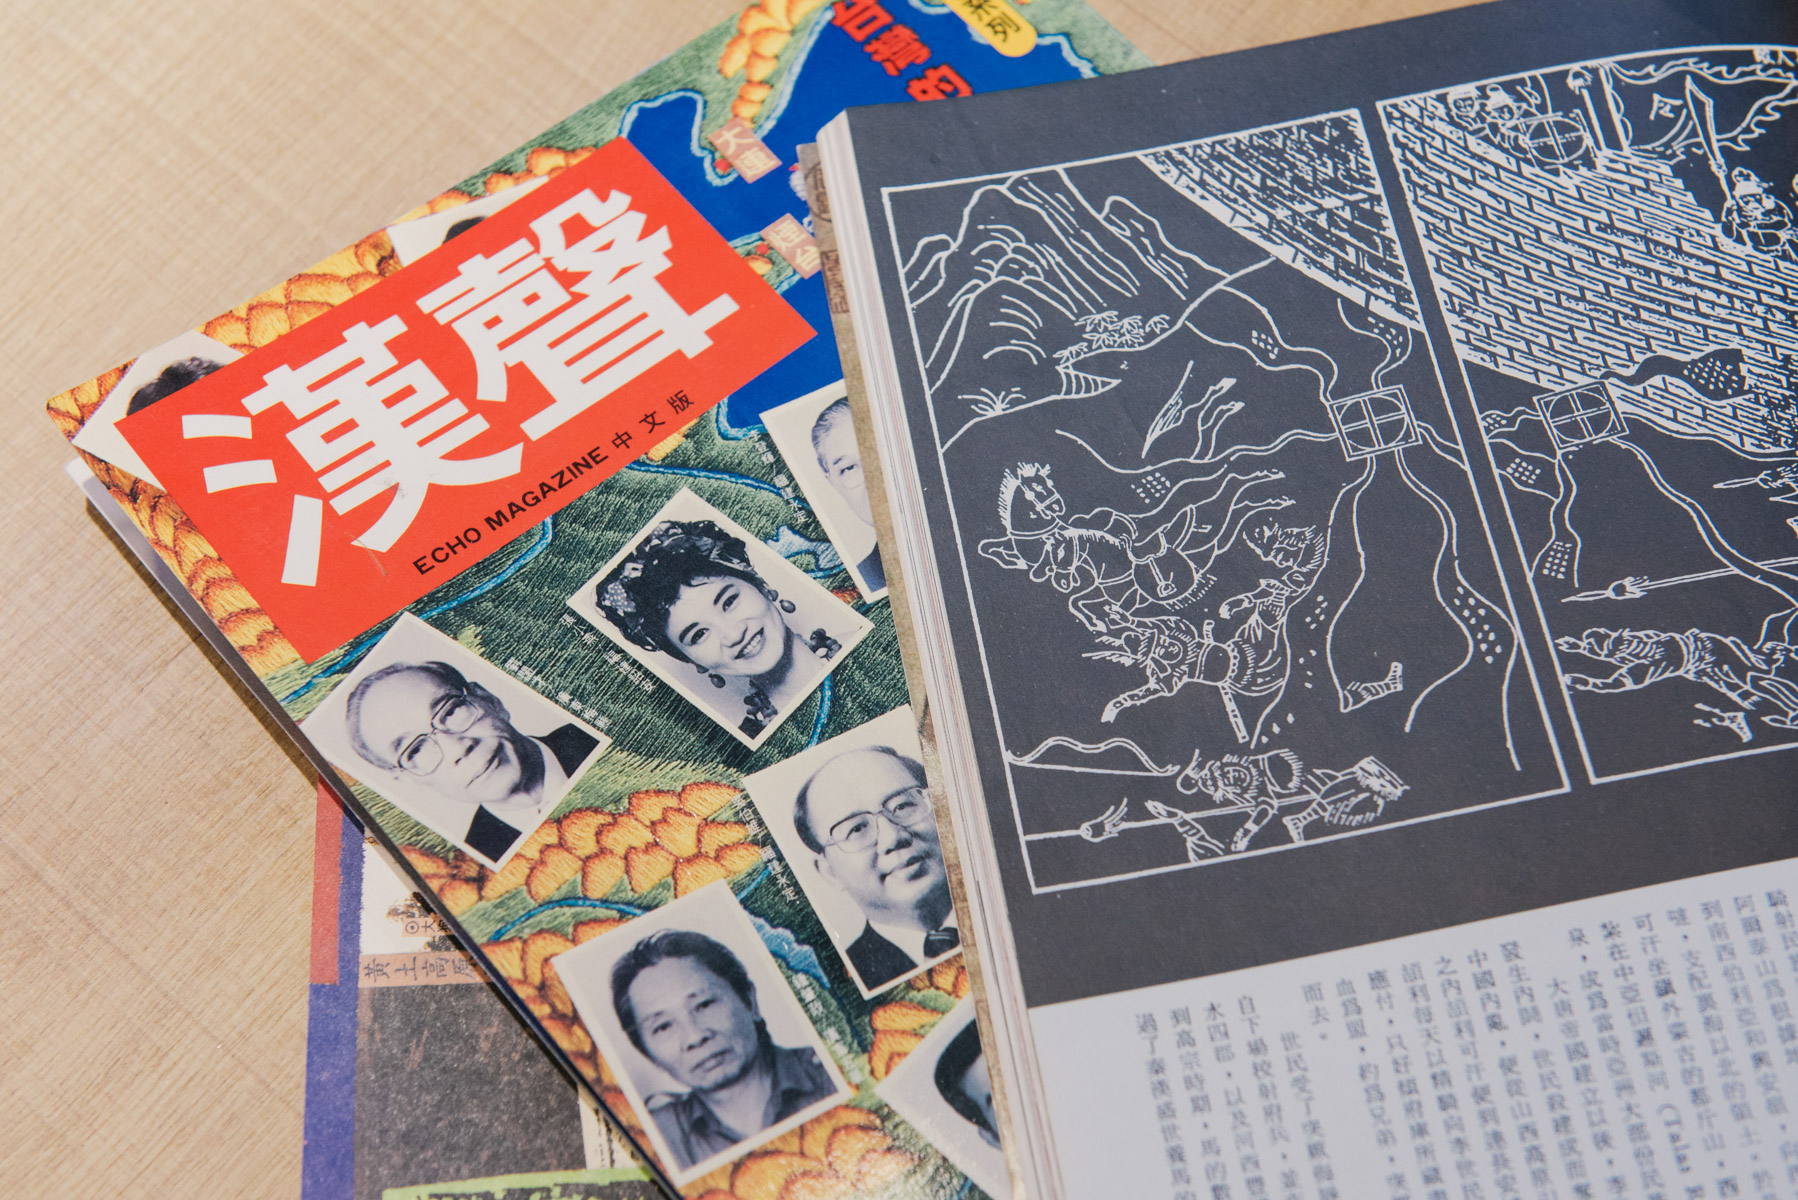 《漢聲》與《雄獅美術》：兩本文化雜誌先驅五十年的歷史大夢